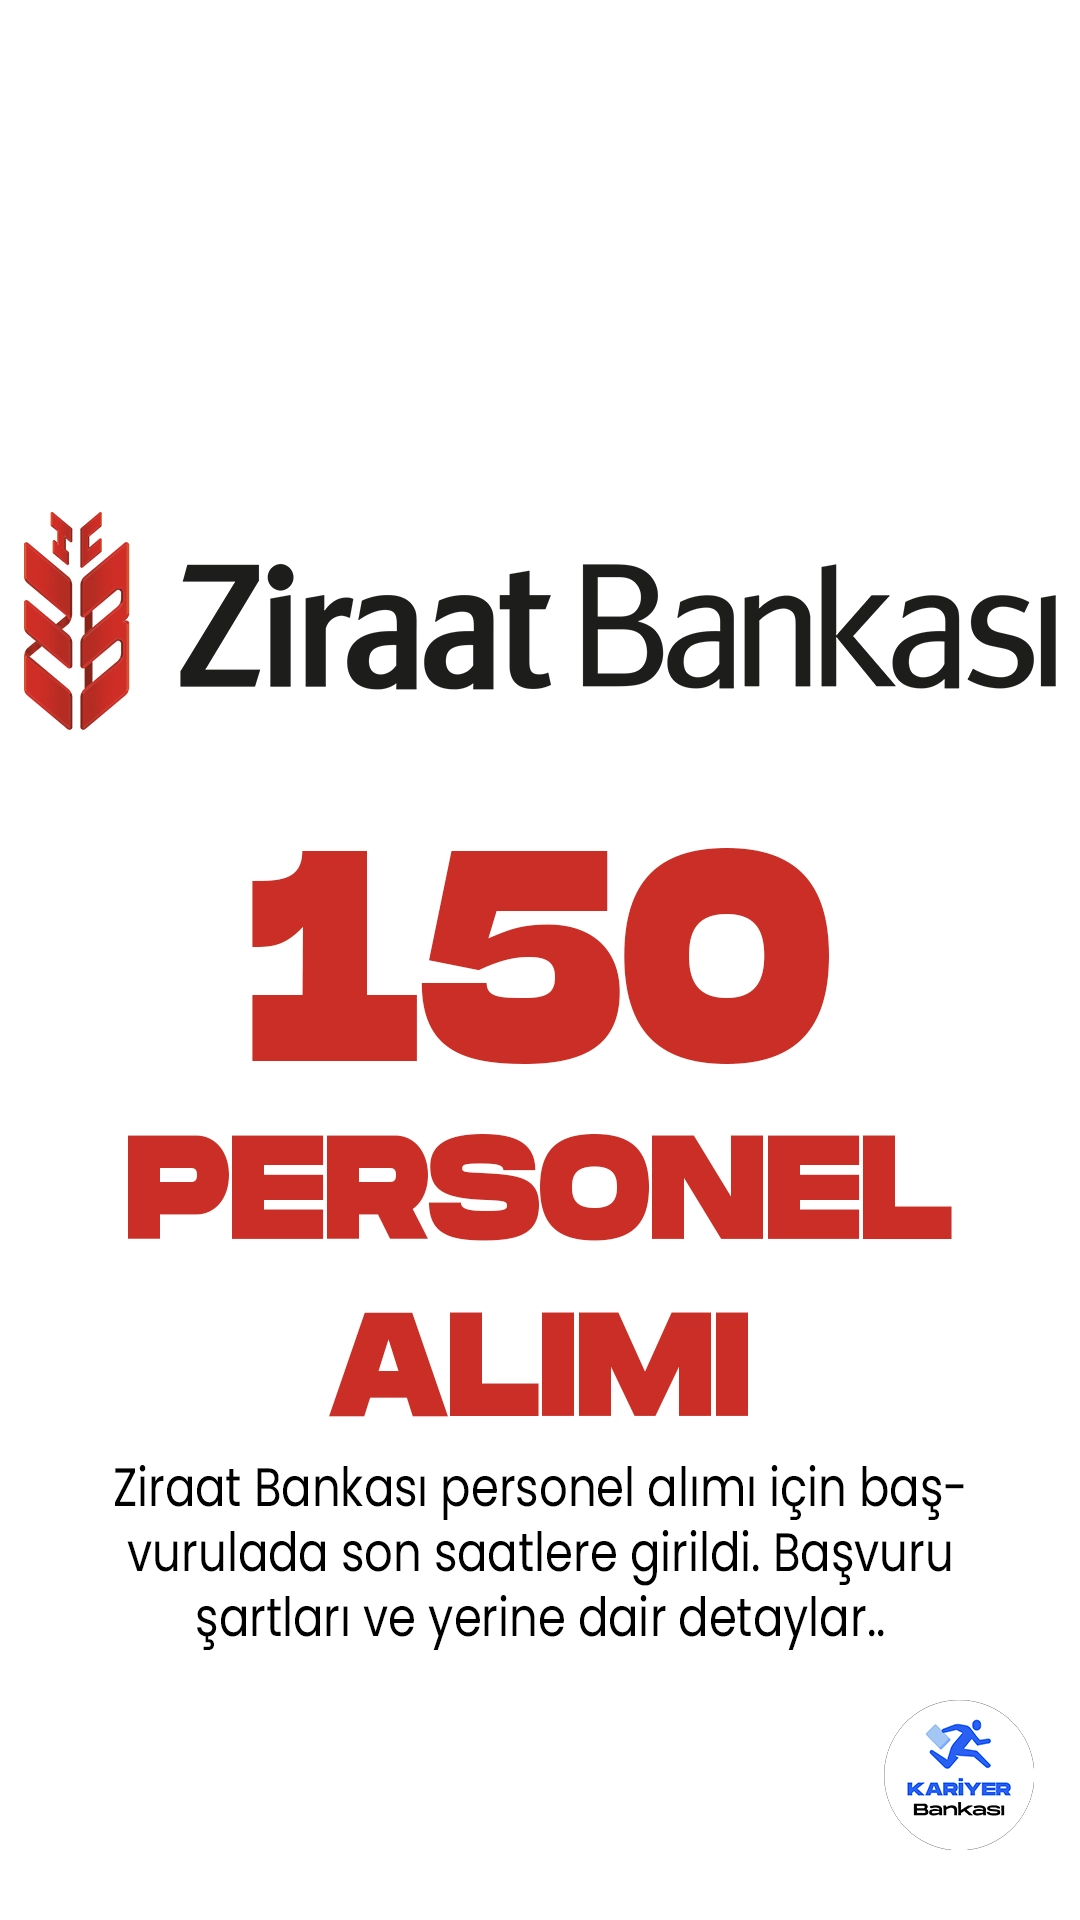 Ziraat Bankası personel alımı için başvurulada son saatlere girildi. Bankanın resmi sayfasından İstanbul ilindeki Genel Müdürlük Birimleri ile Şubelerinde görevlendirilmek üzere uzman yardımcısı pozisyonu için 150 personel alımı yapılacağı aktarılırken, başvuruların yarın(23 Haziran) sona ereceği kaydedildi. Başvuru yapacak adayların genel şartların yanı sıra, özel şartları da dikkatle incelemesi gerekmektedir.